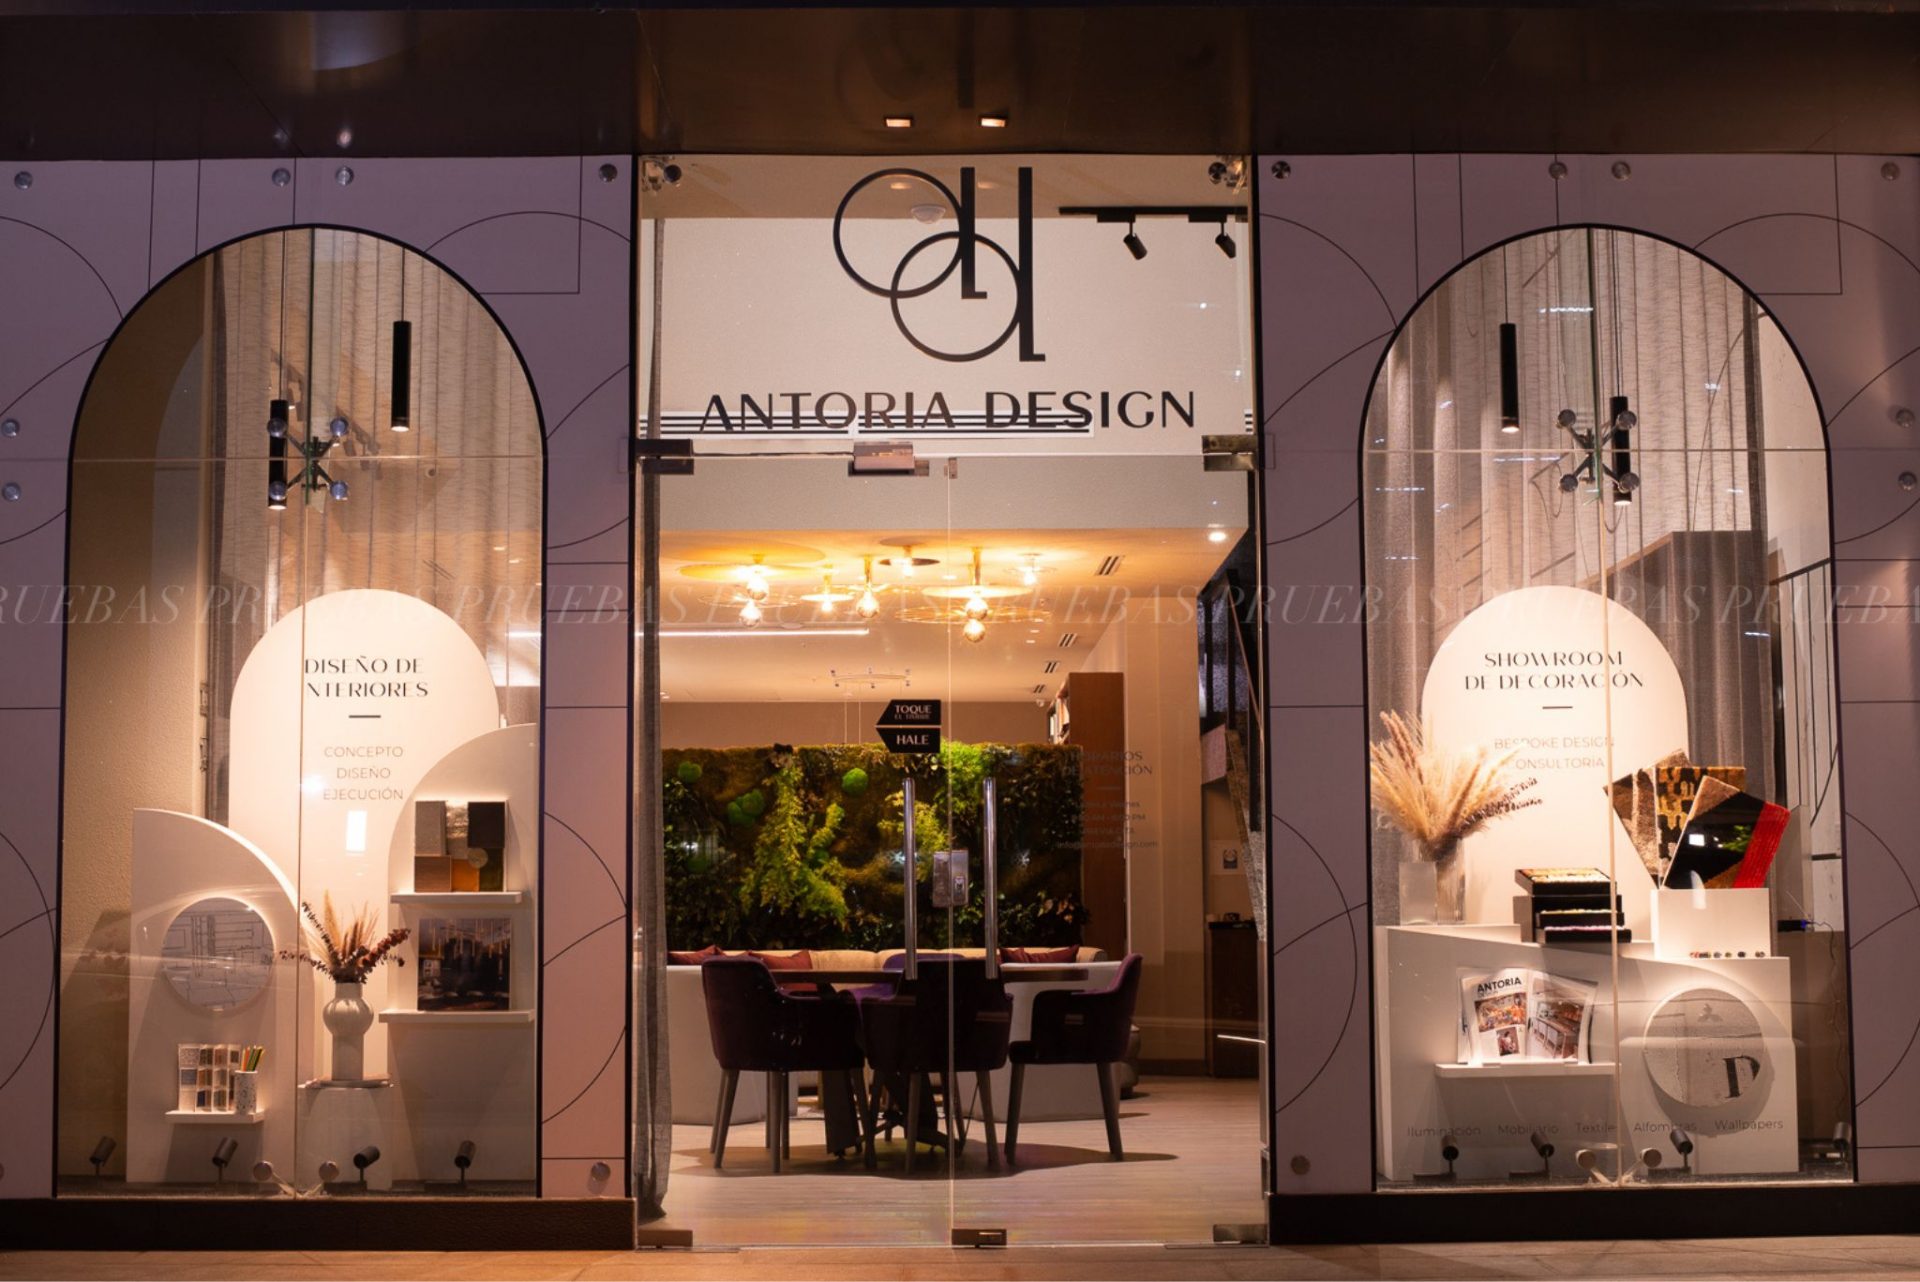 Antoria Design Studio